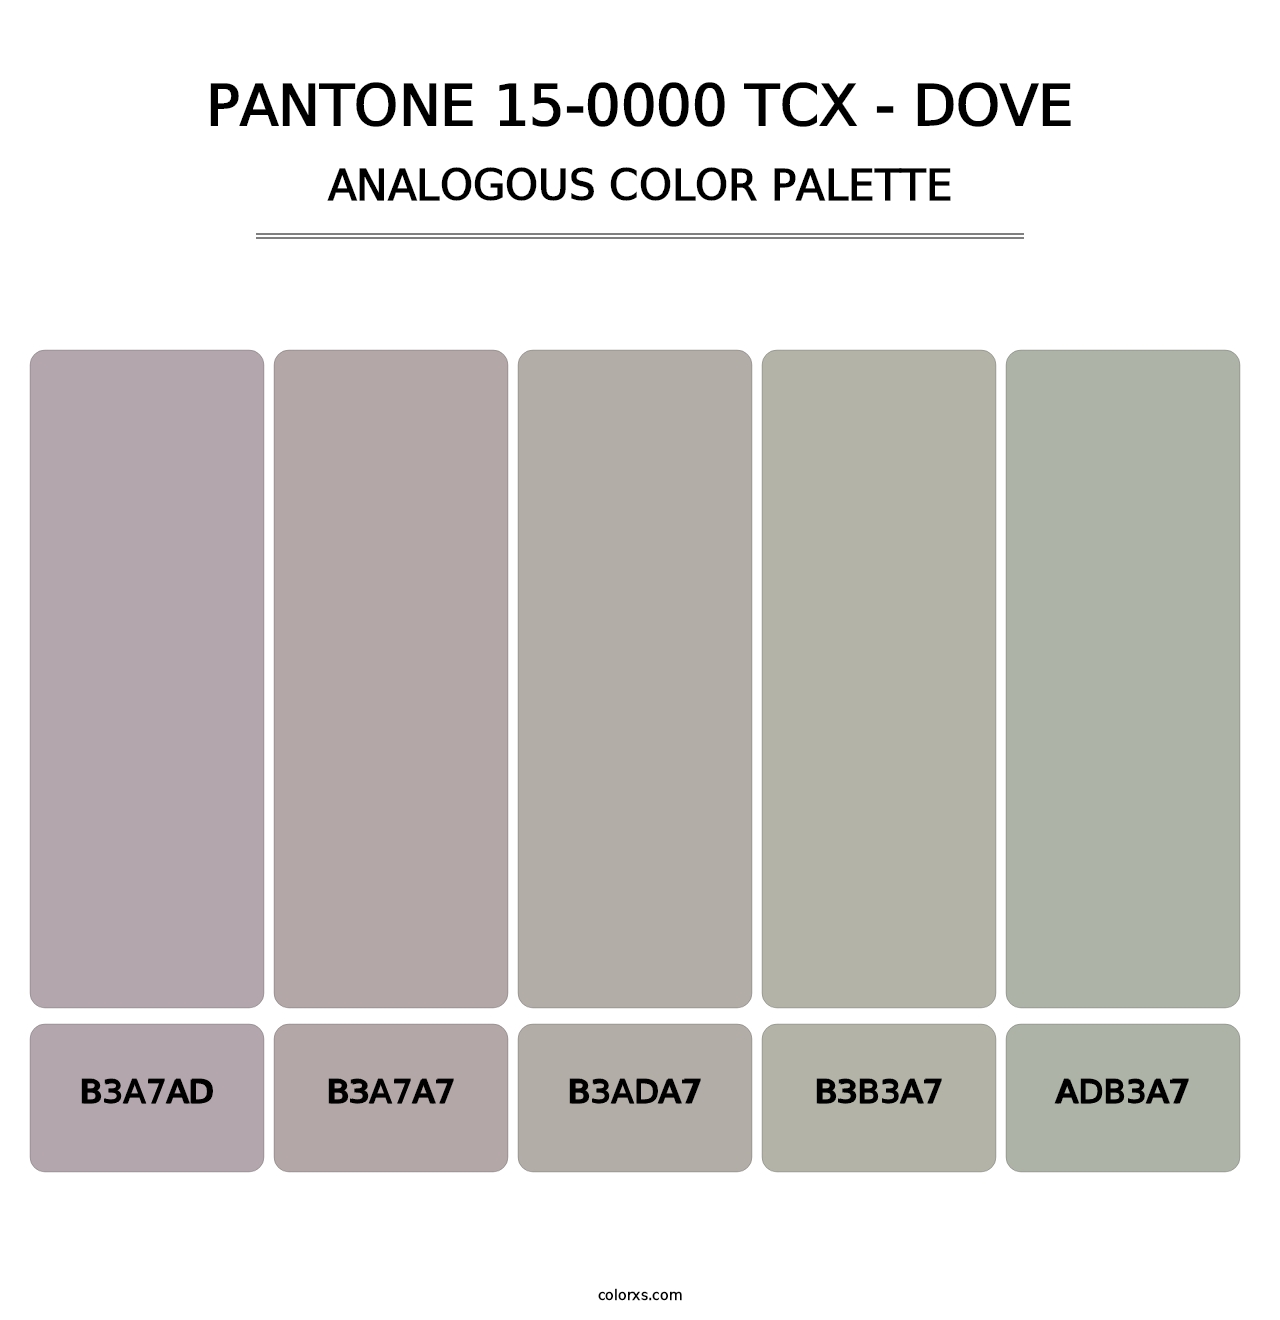 PANTONE 15-0000 TCX - Dove - Analogous Color Palette